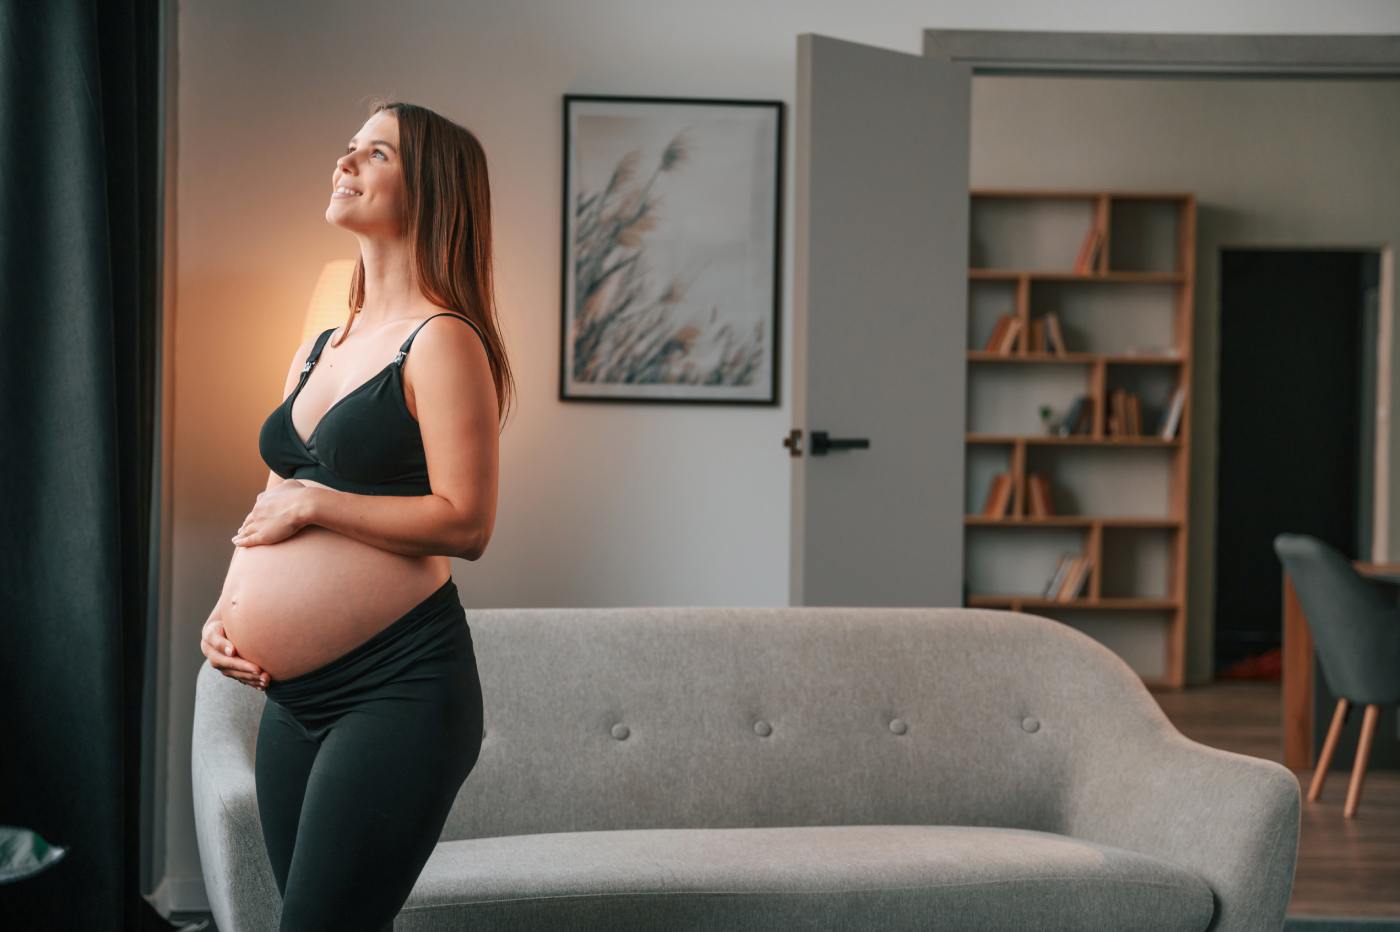 Les premiers mouvements de bébé : à quoi s’attendre durant votre grossesse ?